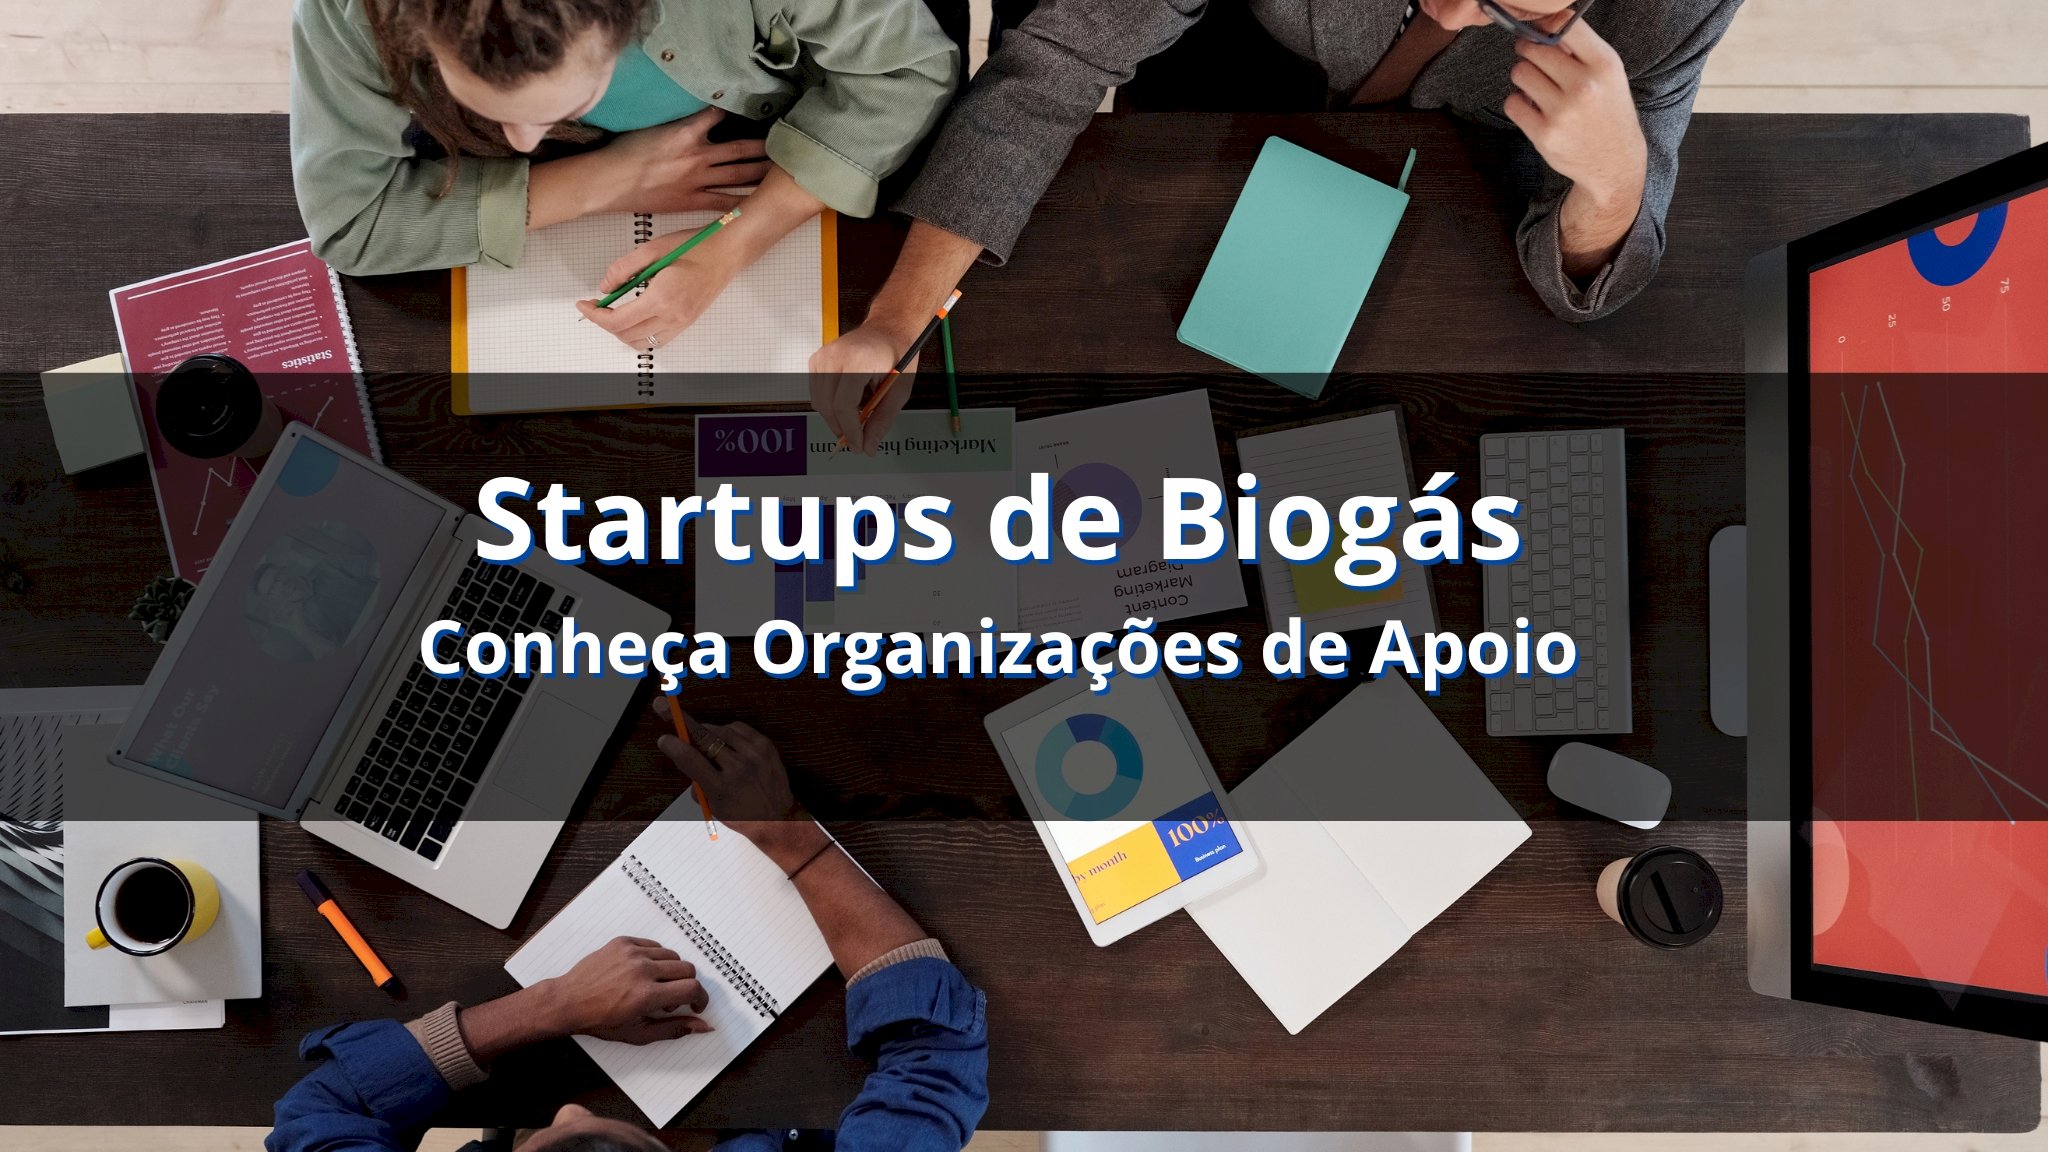 Organizações de apoio para startups de biogás